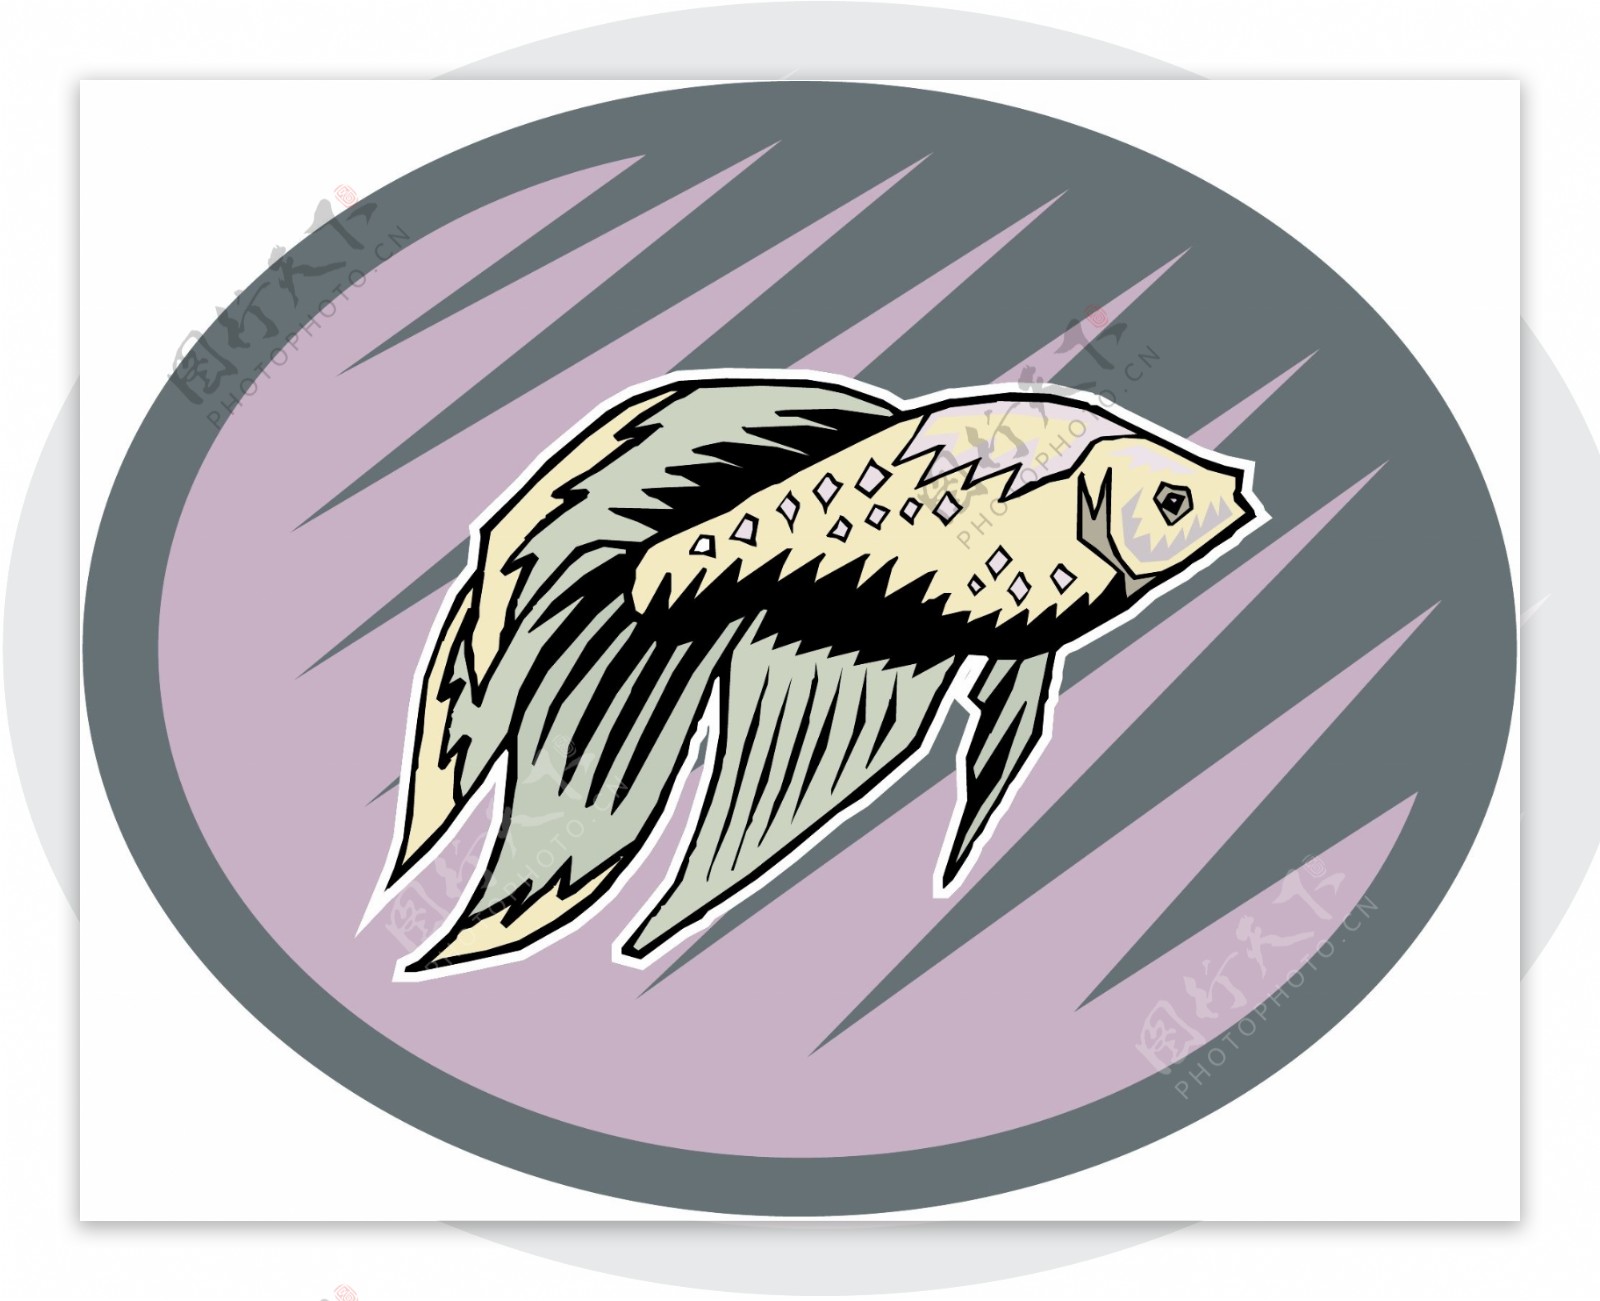 五彩小鱼水生动物矢量素材EPS格式0701